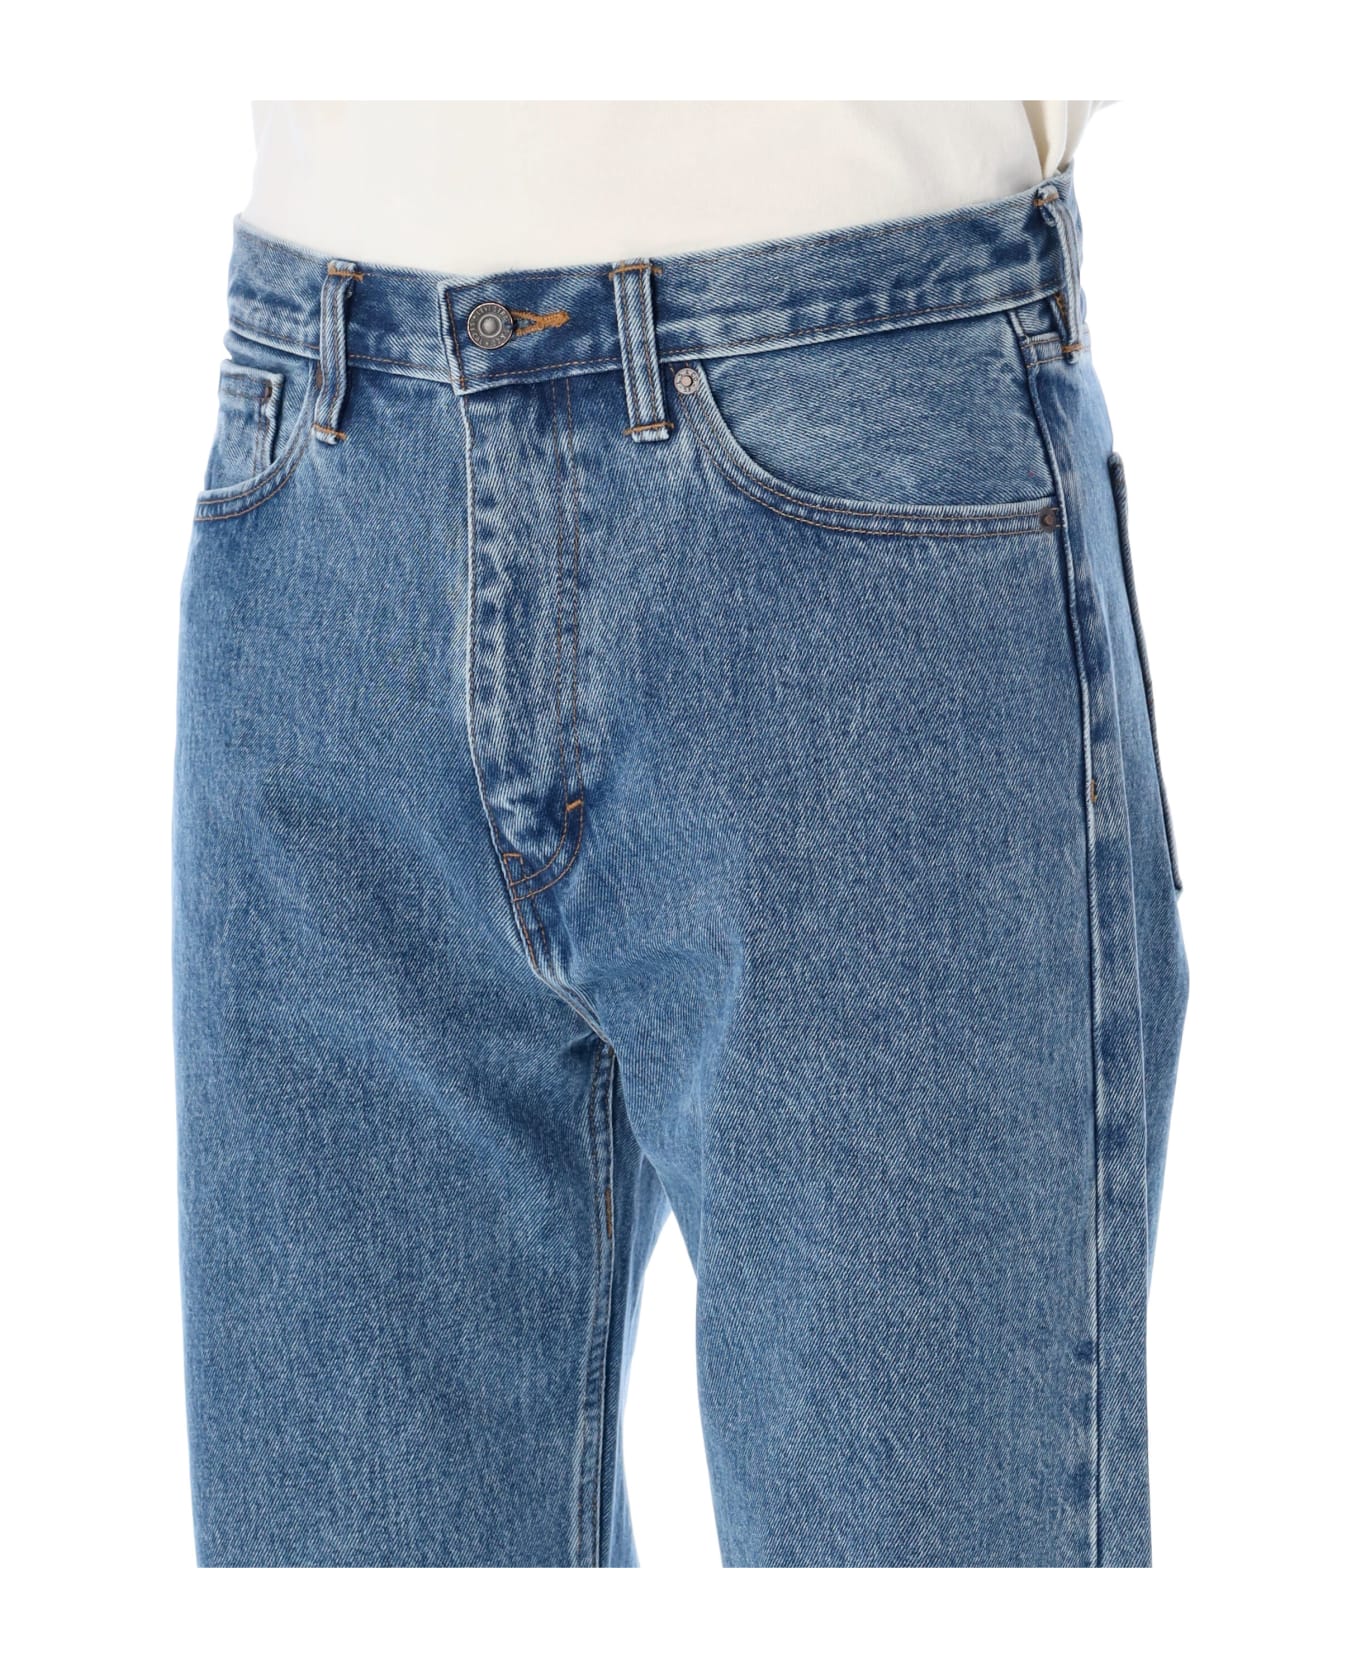 Levi's Cotton Baggy Five Pocket Jeans - MED BLUE デニム